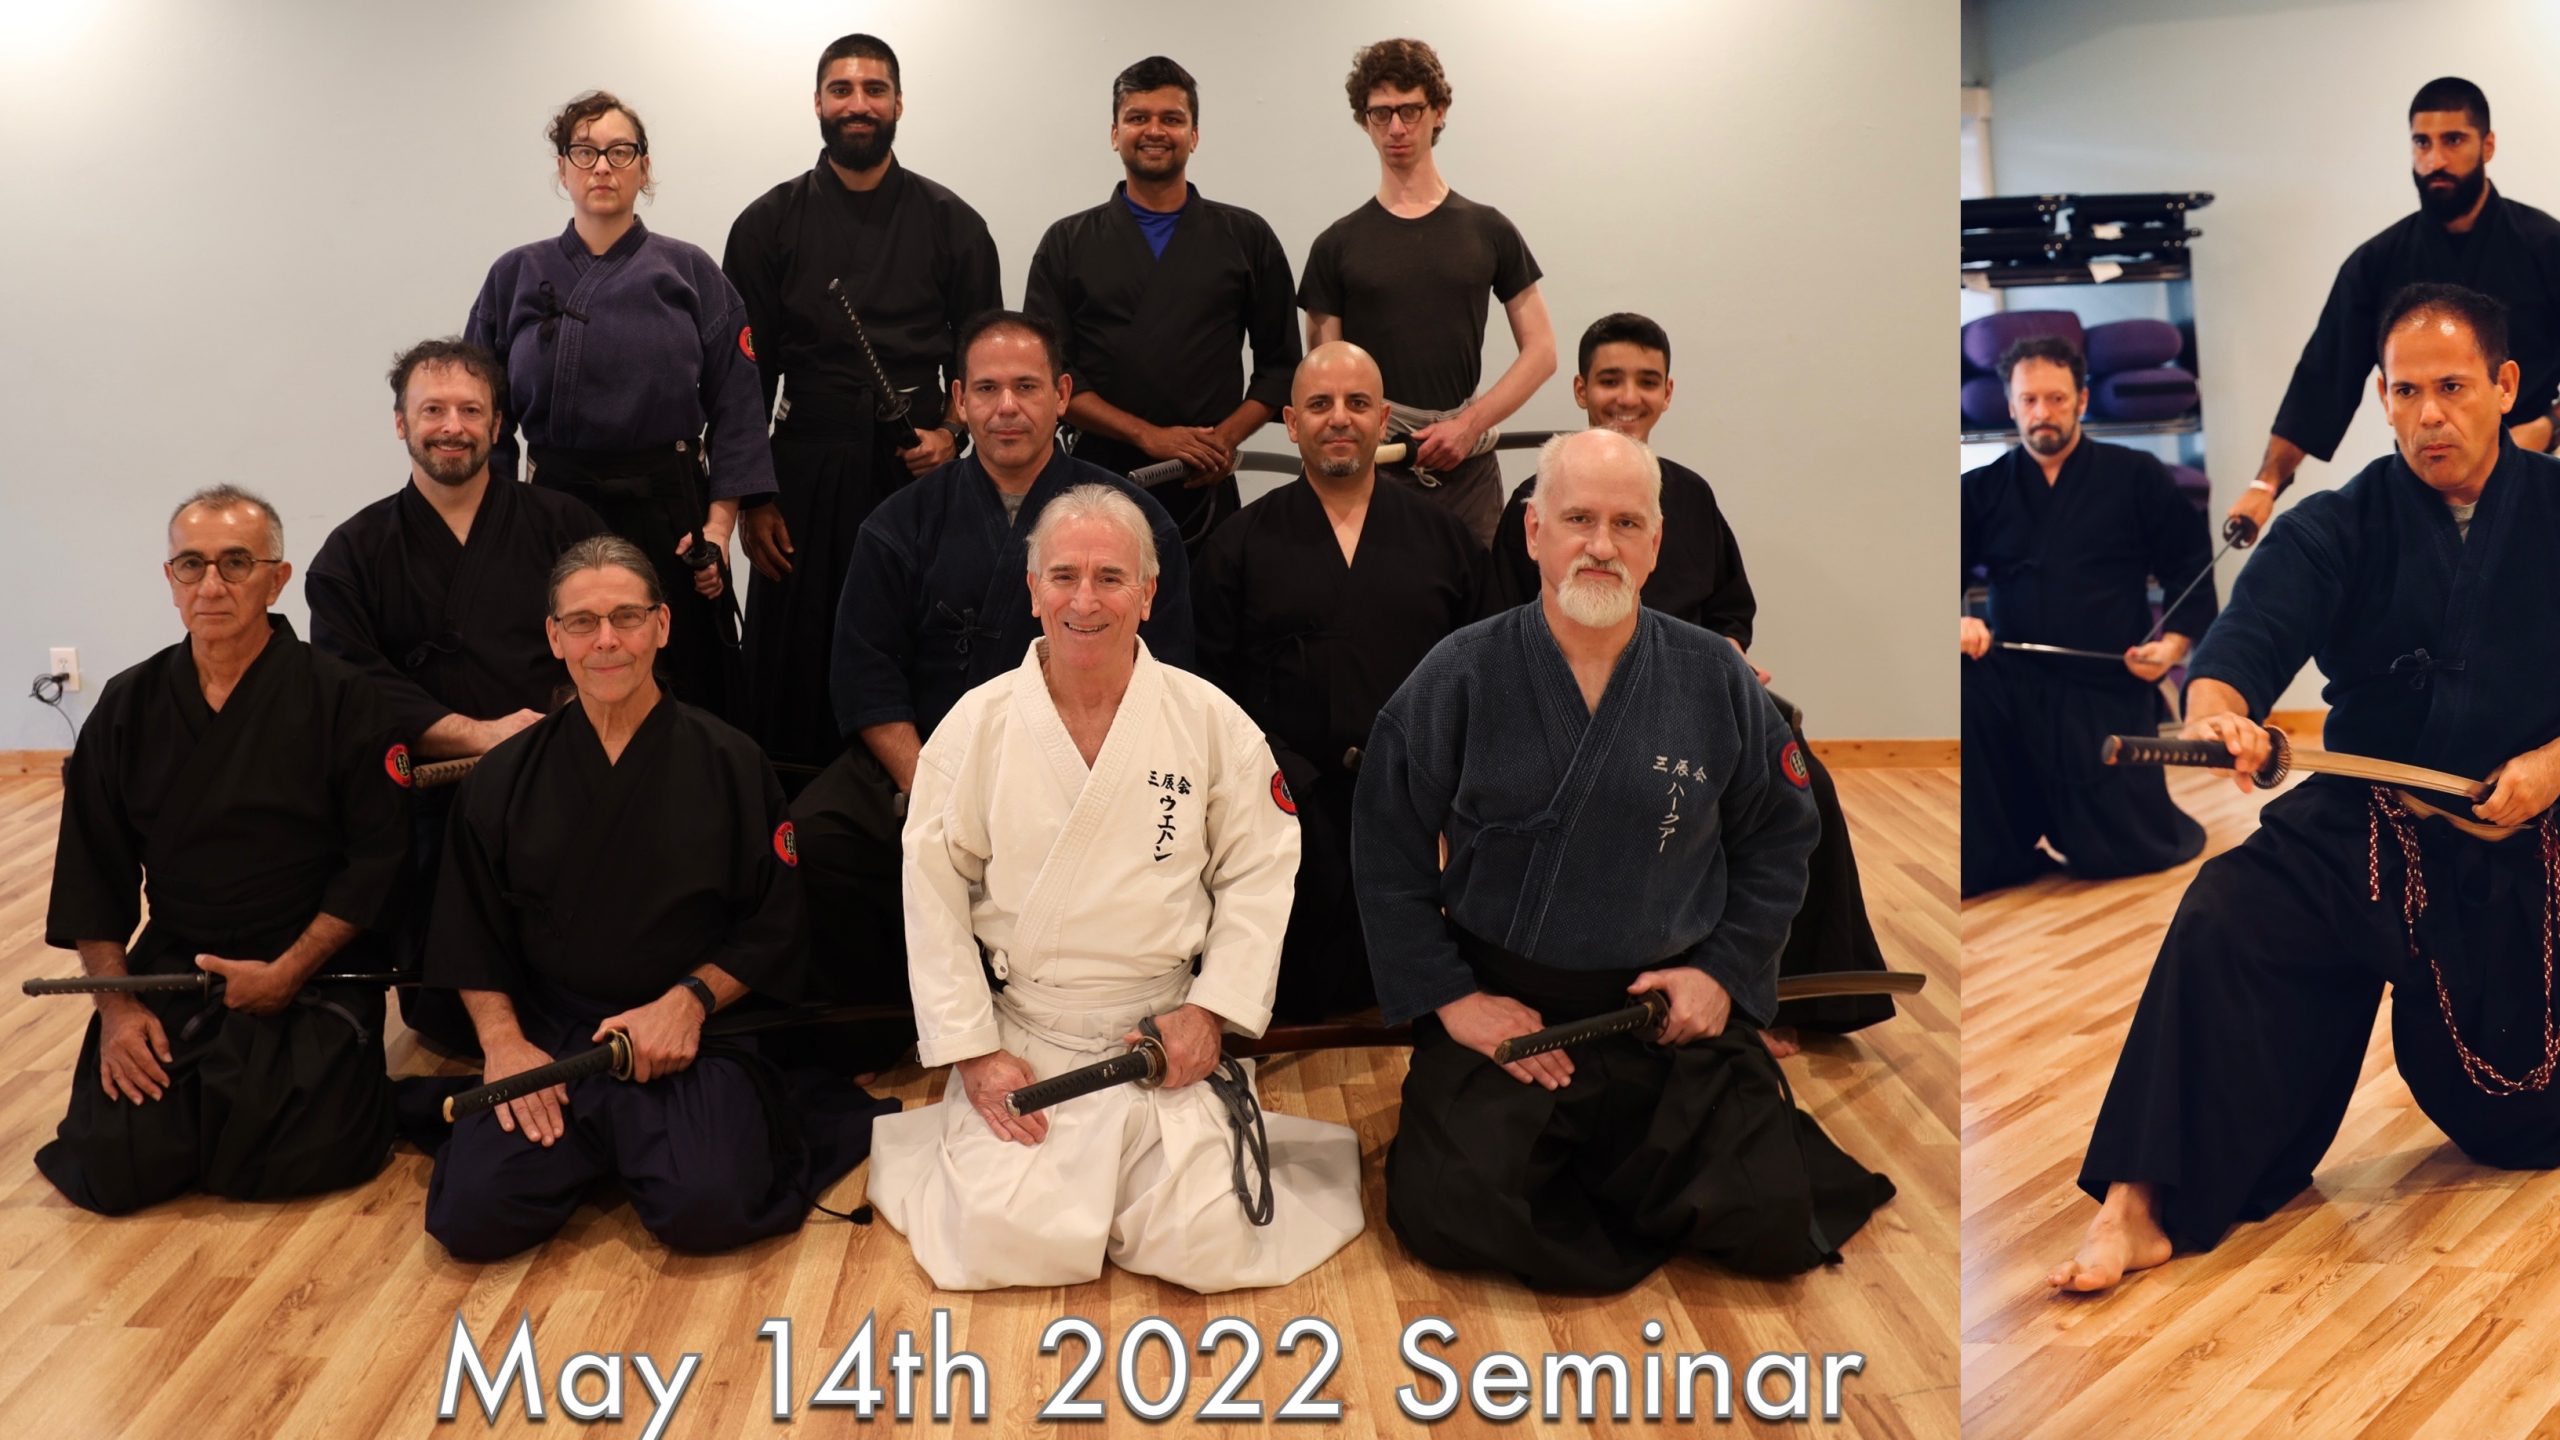 May 14th 2022 Seminar group